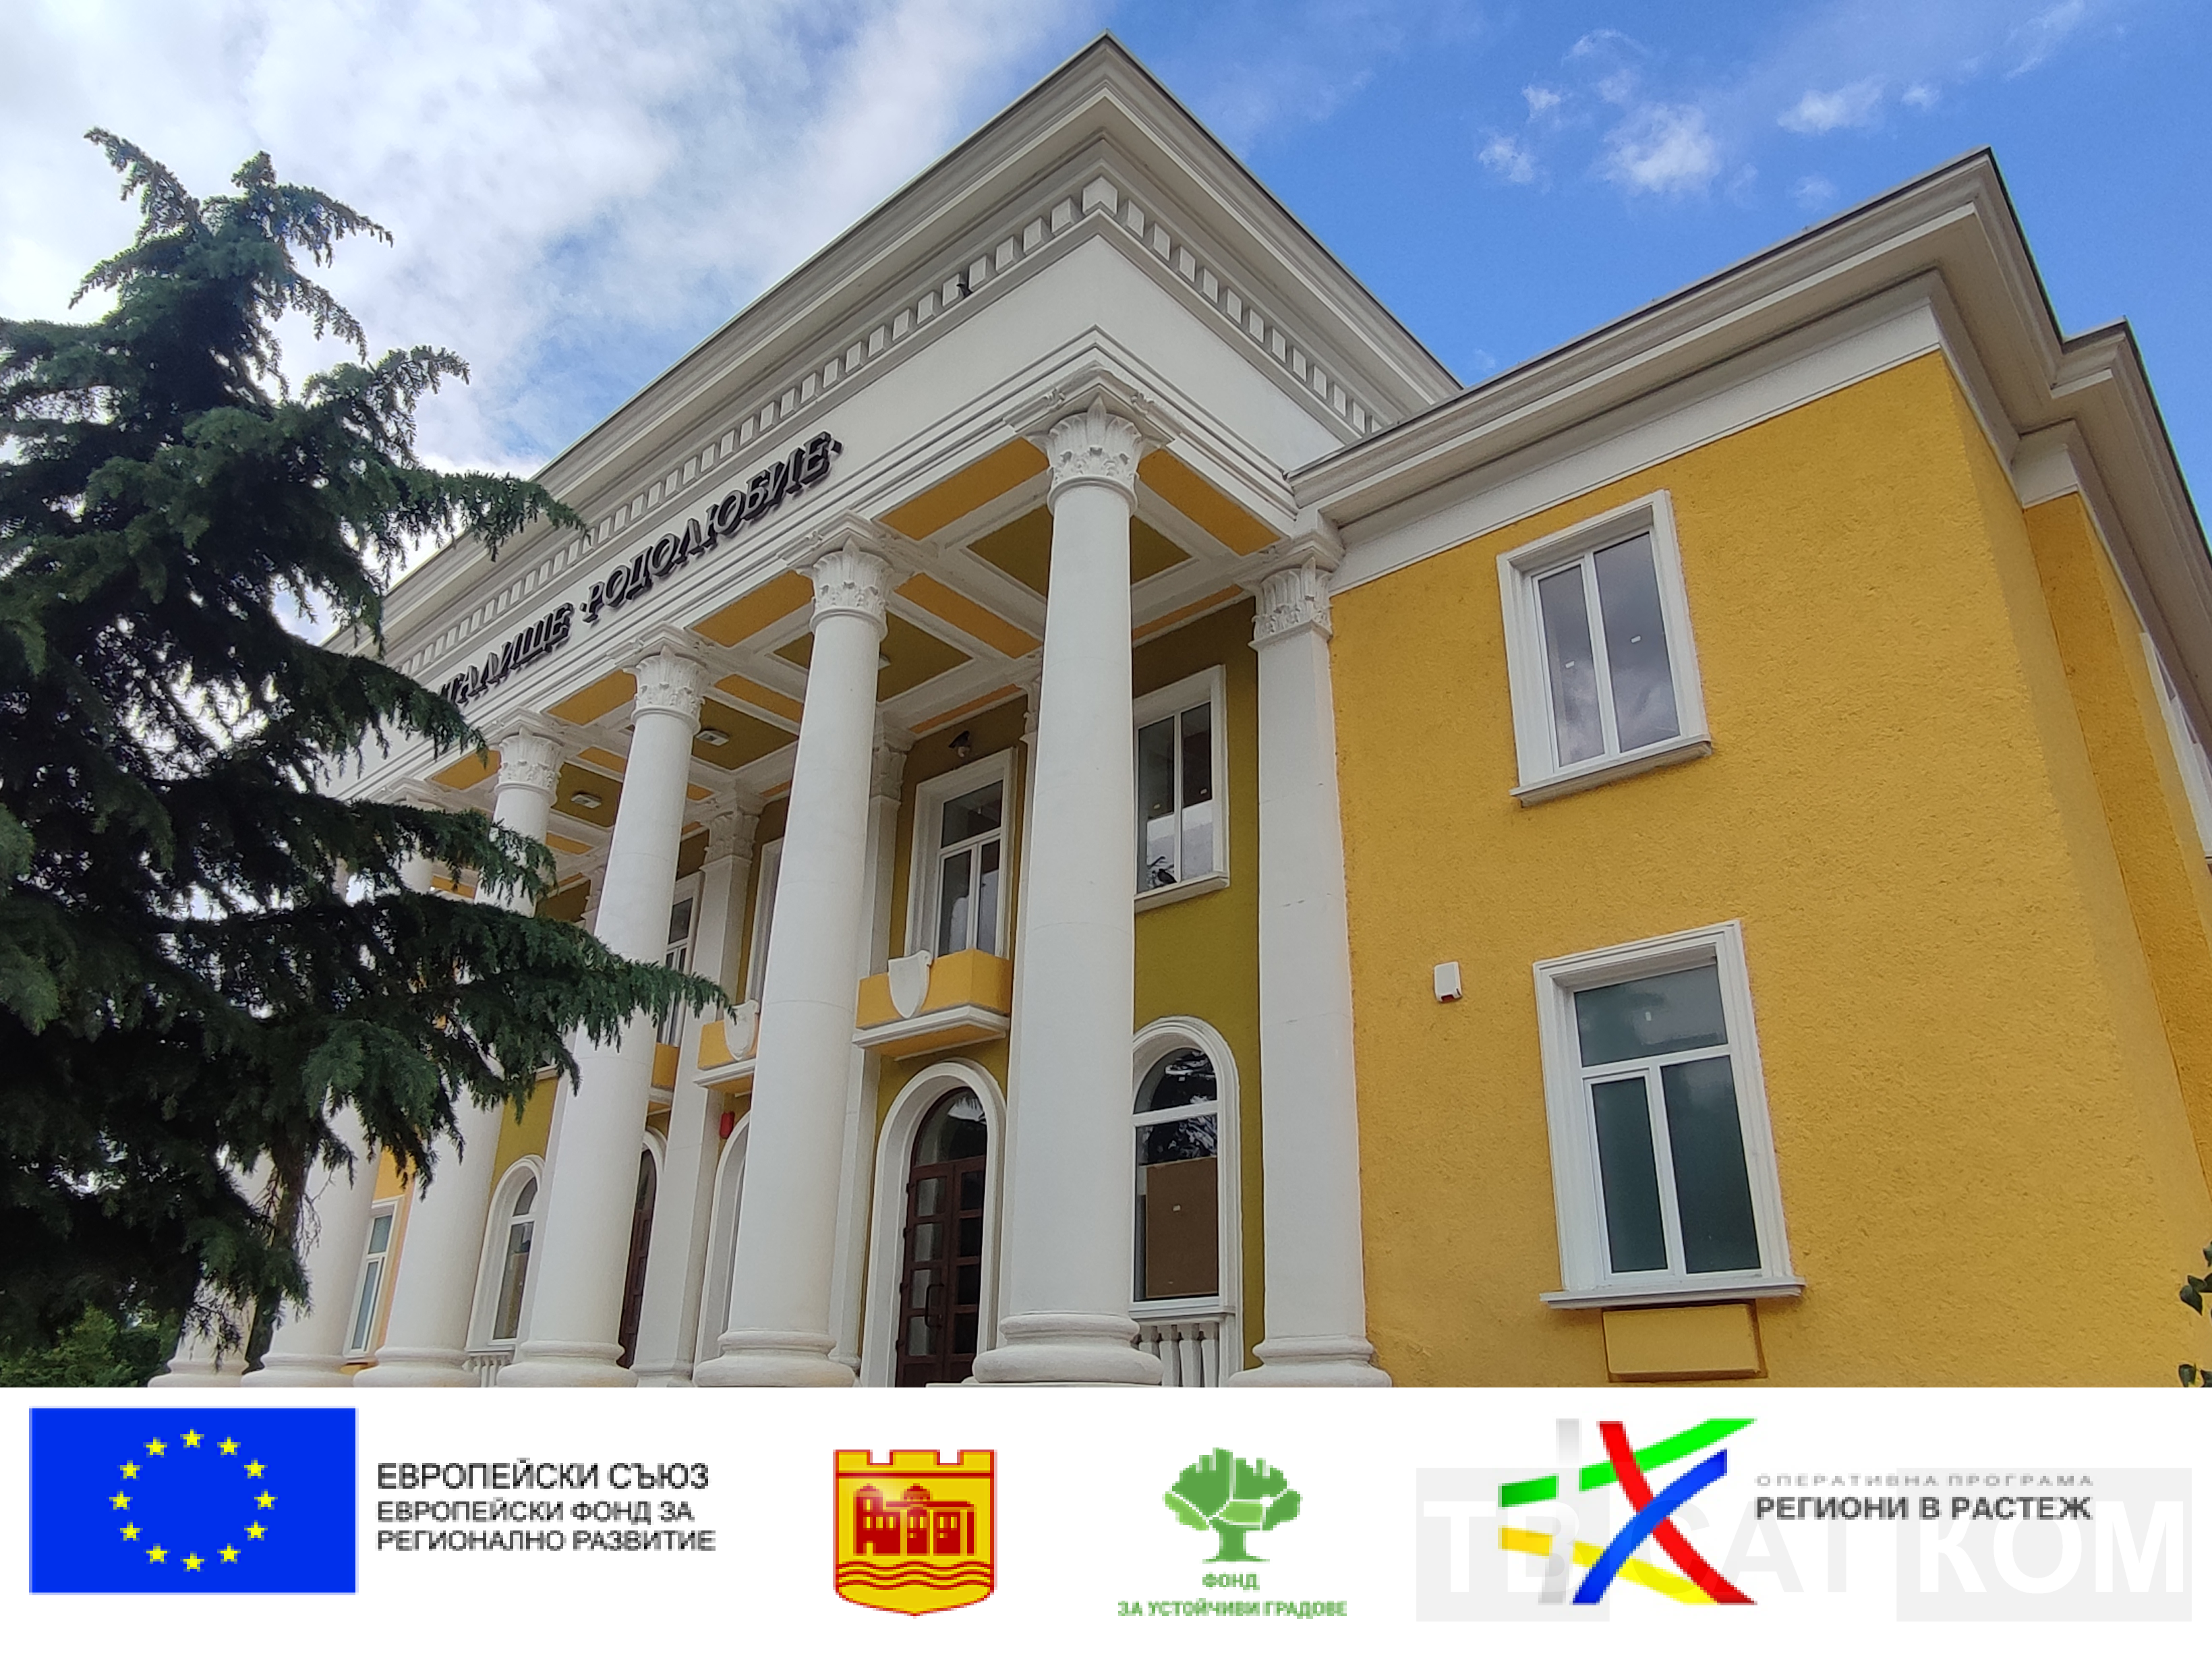 Εγκαινιάστηκε επίσημα το ανακαινισμένο κτίριο του δημοτικού σχολείου «Rodolyubie» στην πόλη Assenovgrad